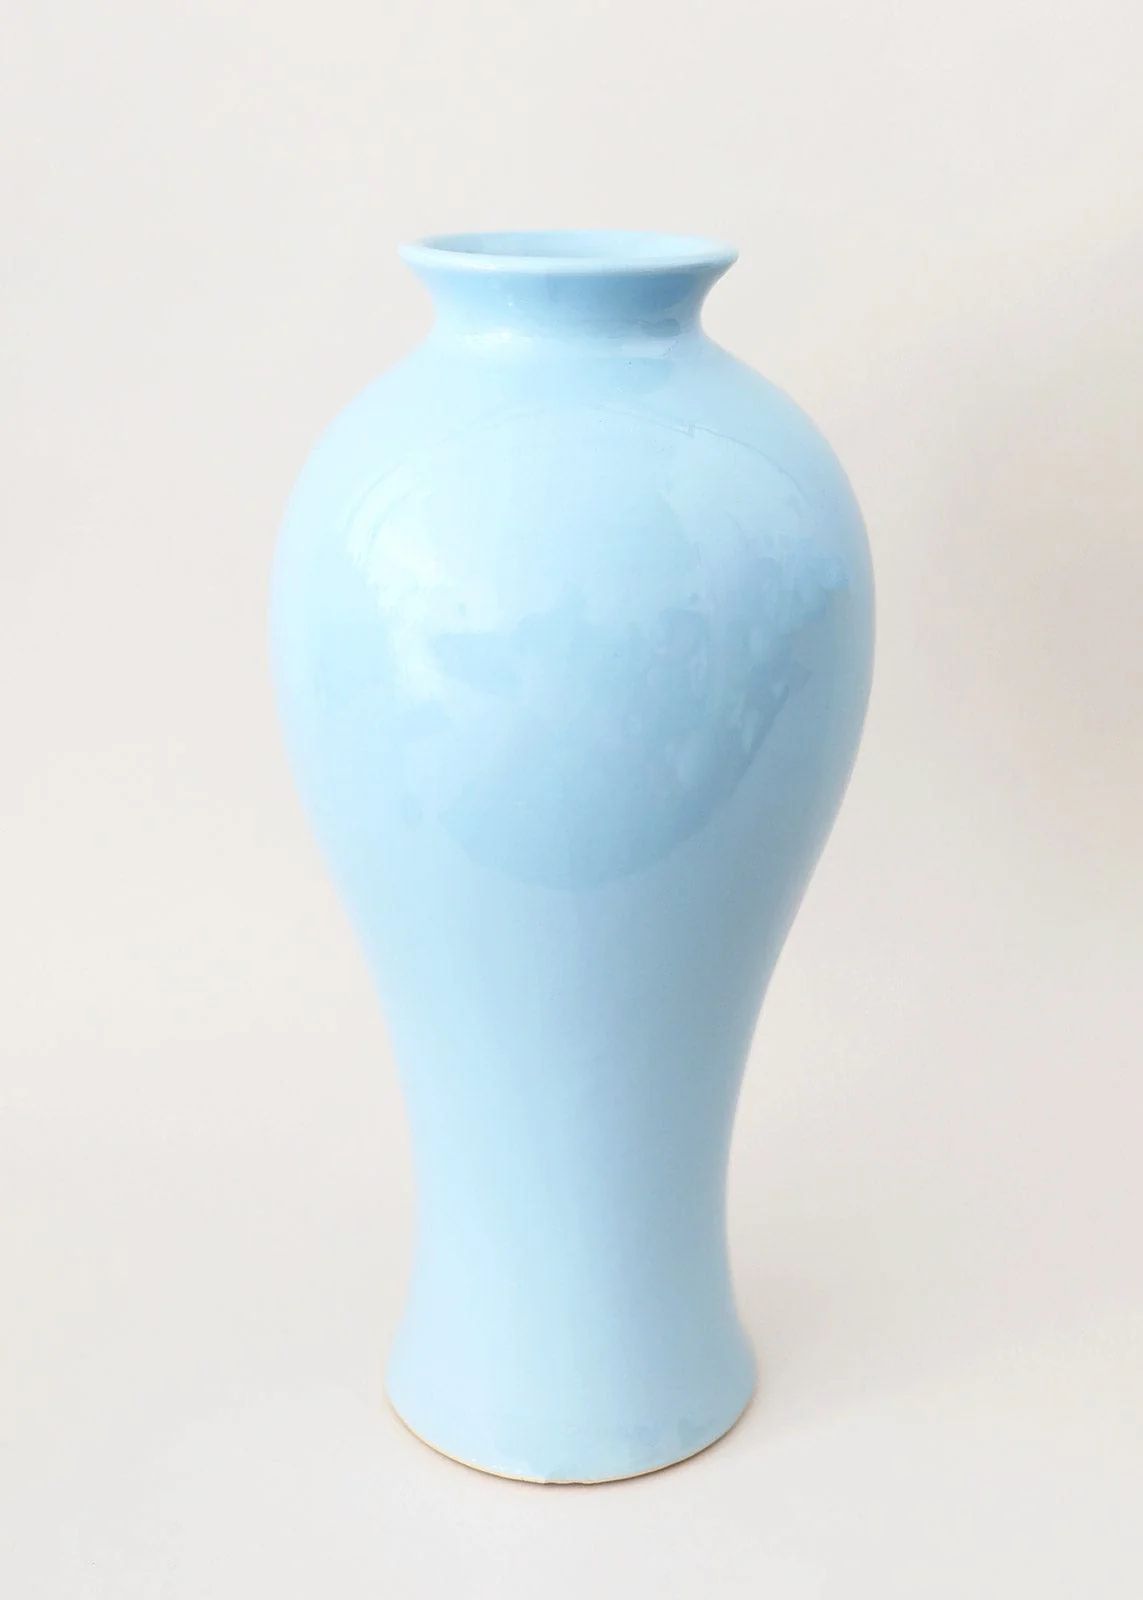 Ceramic Tall Blue Vase | Large Vases for the Home | Afloral.com | Afloral